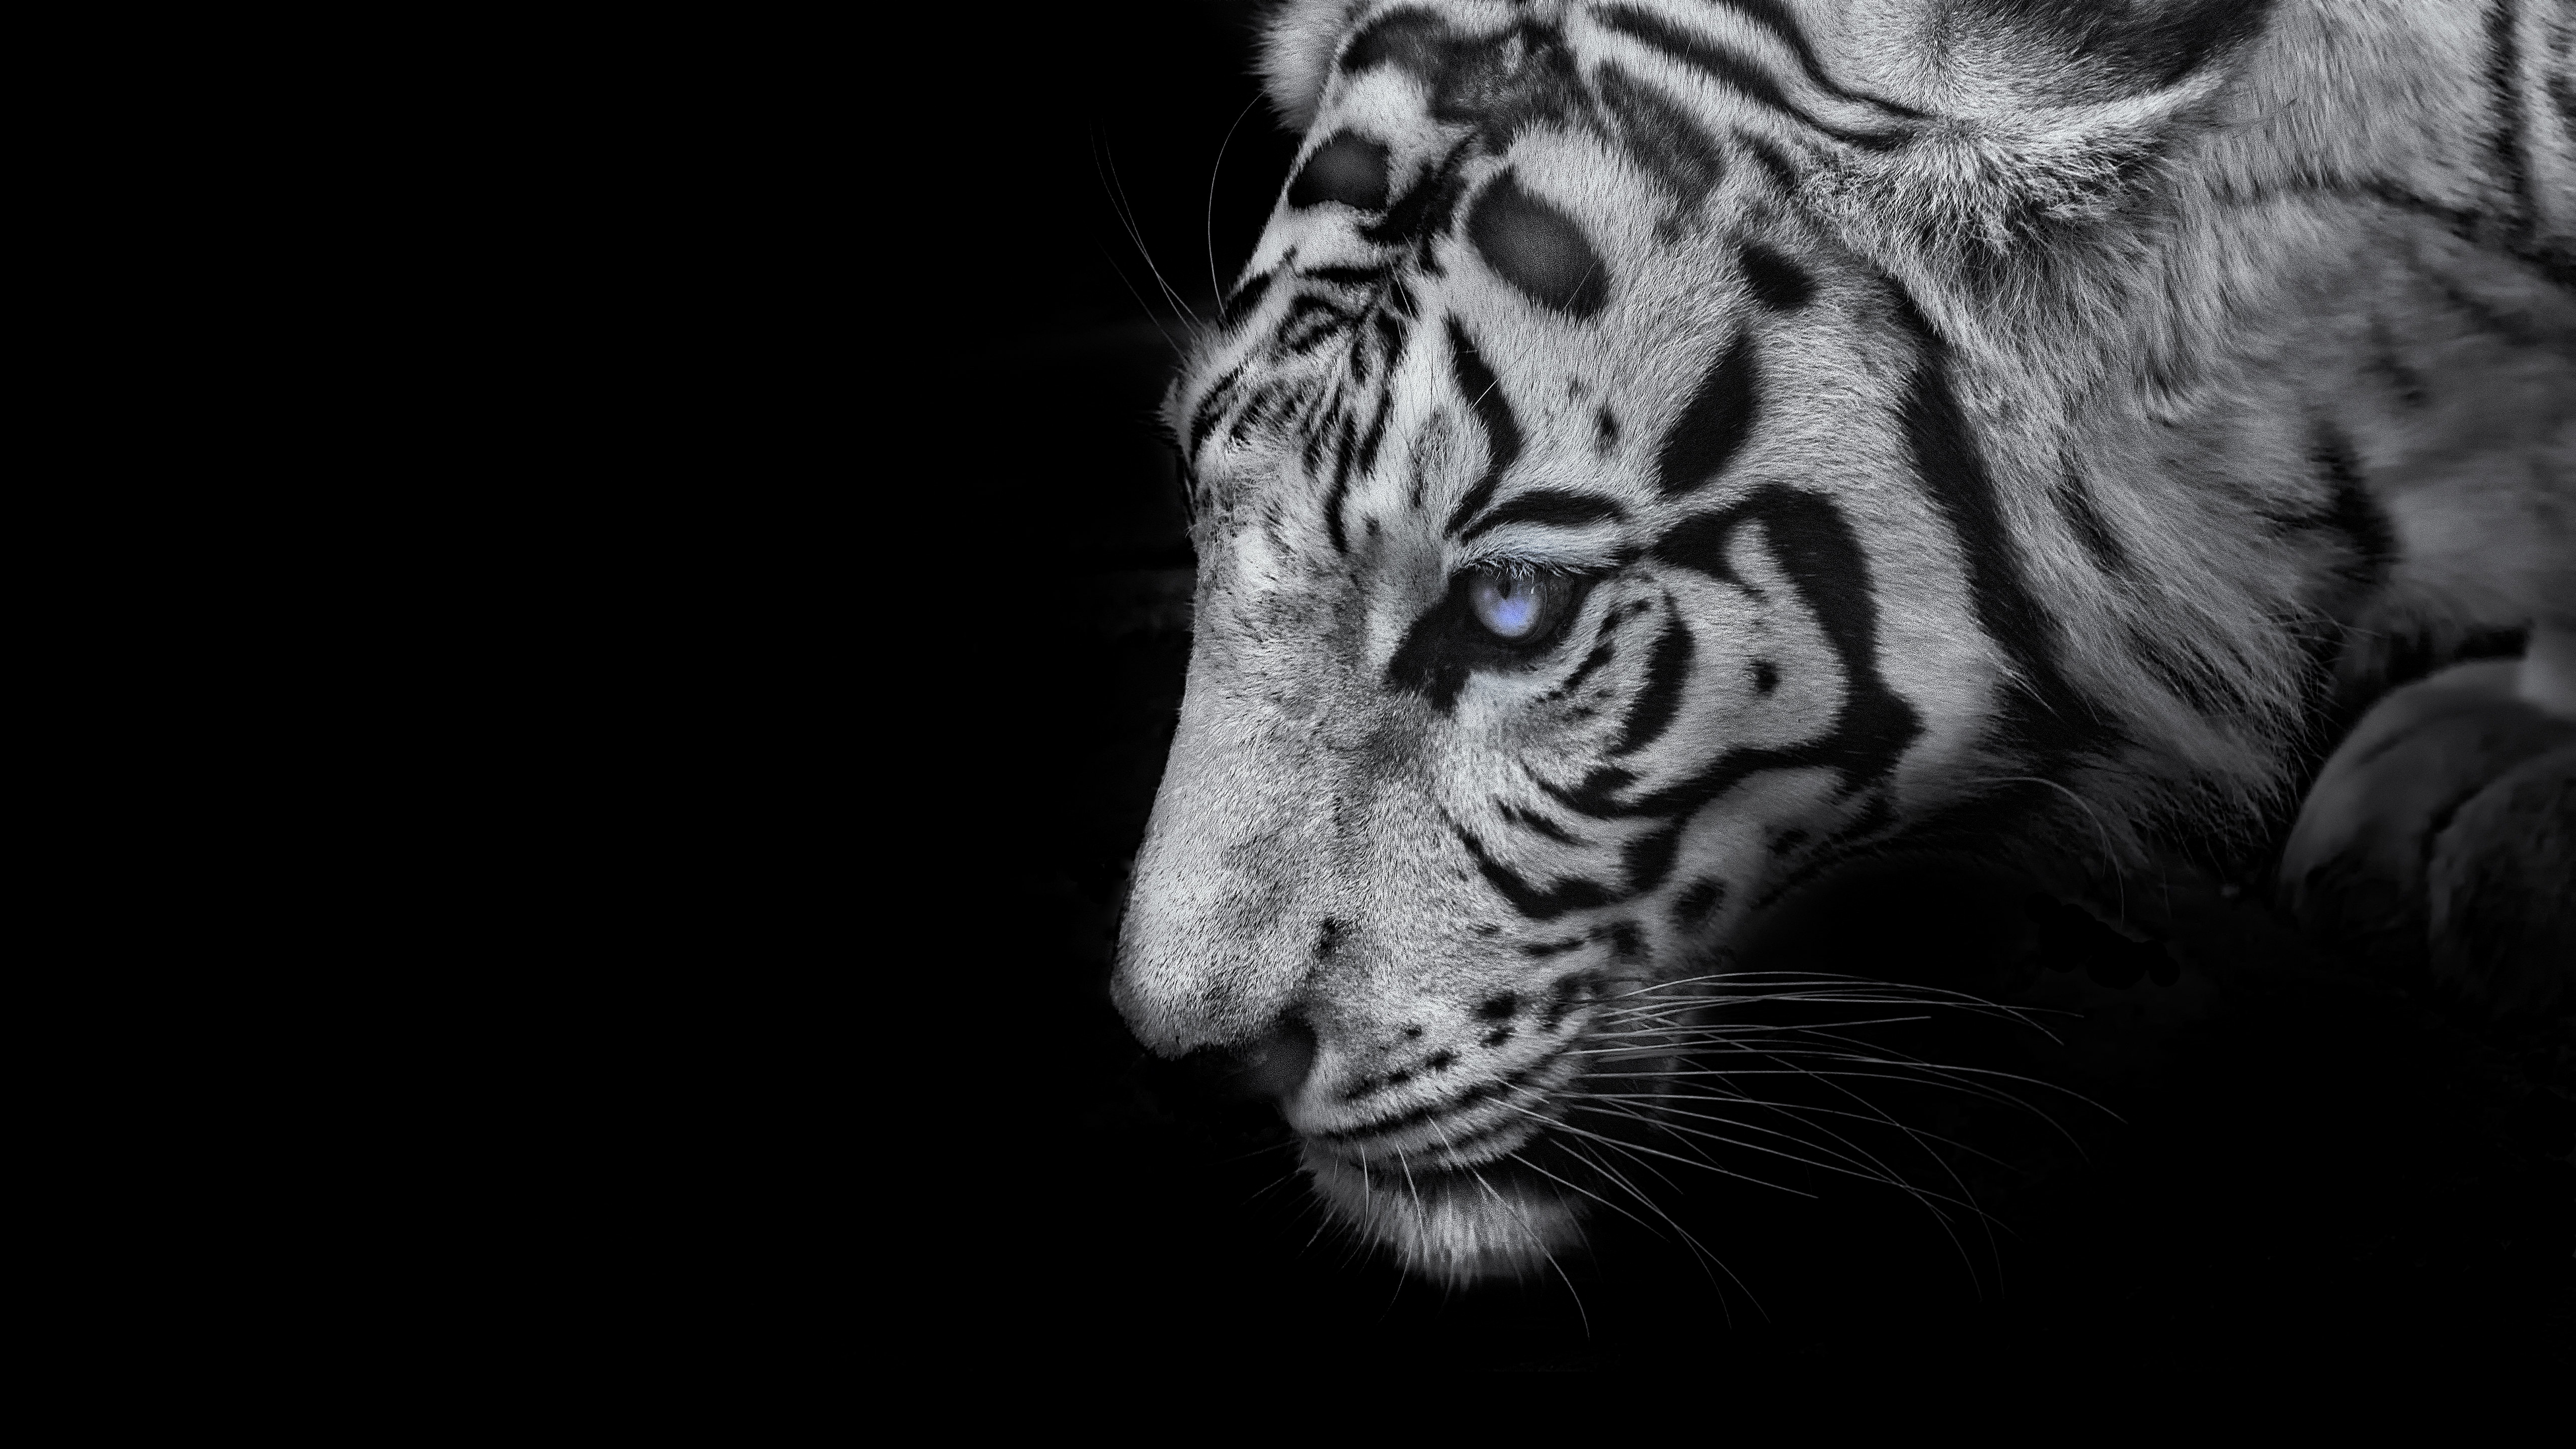 Hổ trắng: Hãy chiêm ngưỡng vẻ đẹp hoang dã của loài hổ trắng thông qua hình ảnh tuyệt đẹp này. Với chi tiết tuyệt vời và màu sắc rực rỡ, bạn sẽ không muốn rời mắt khỏi bức tranh này.